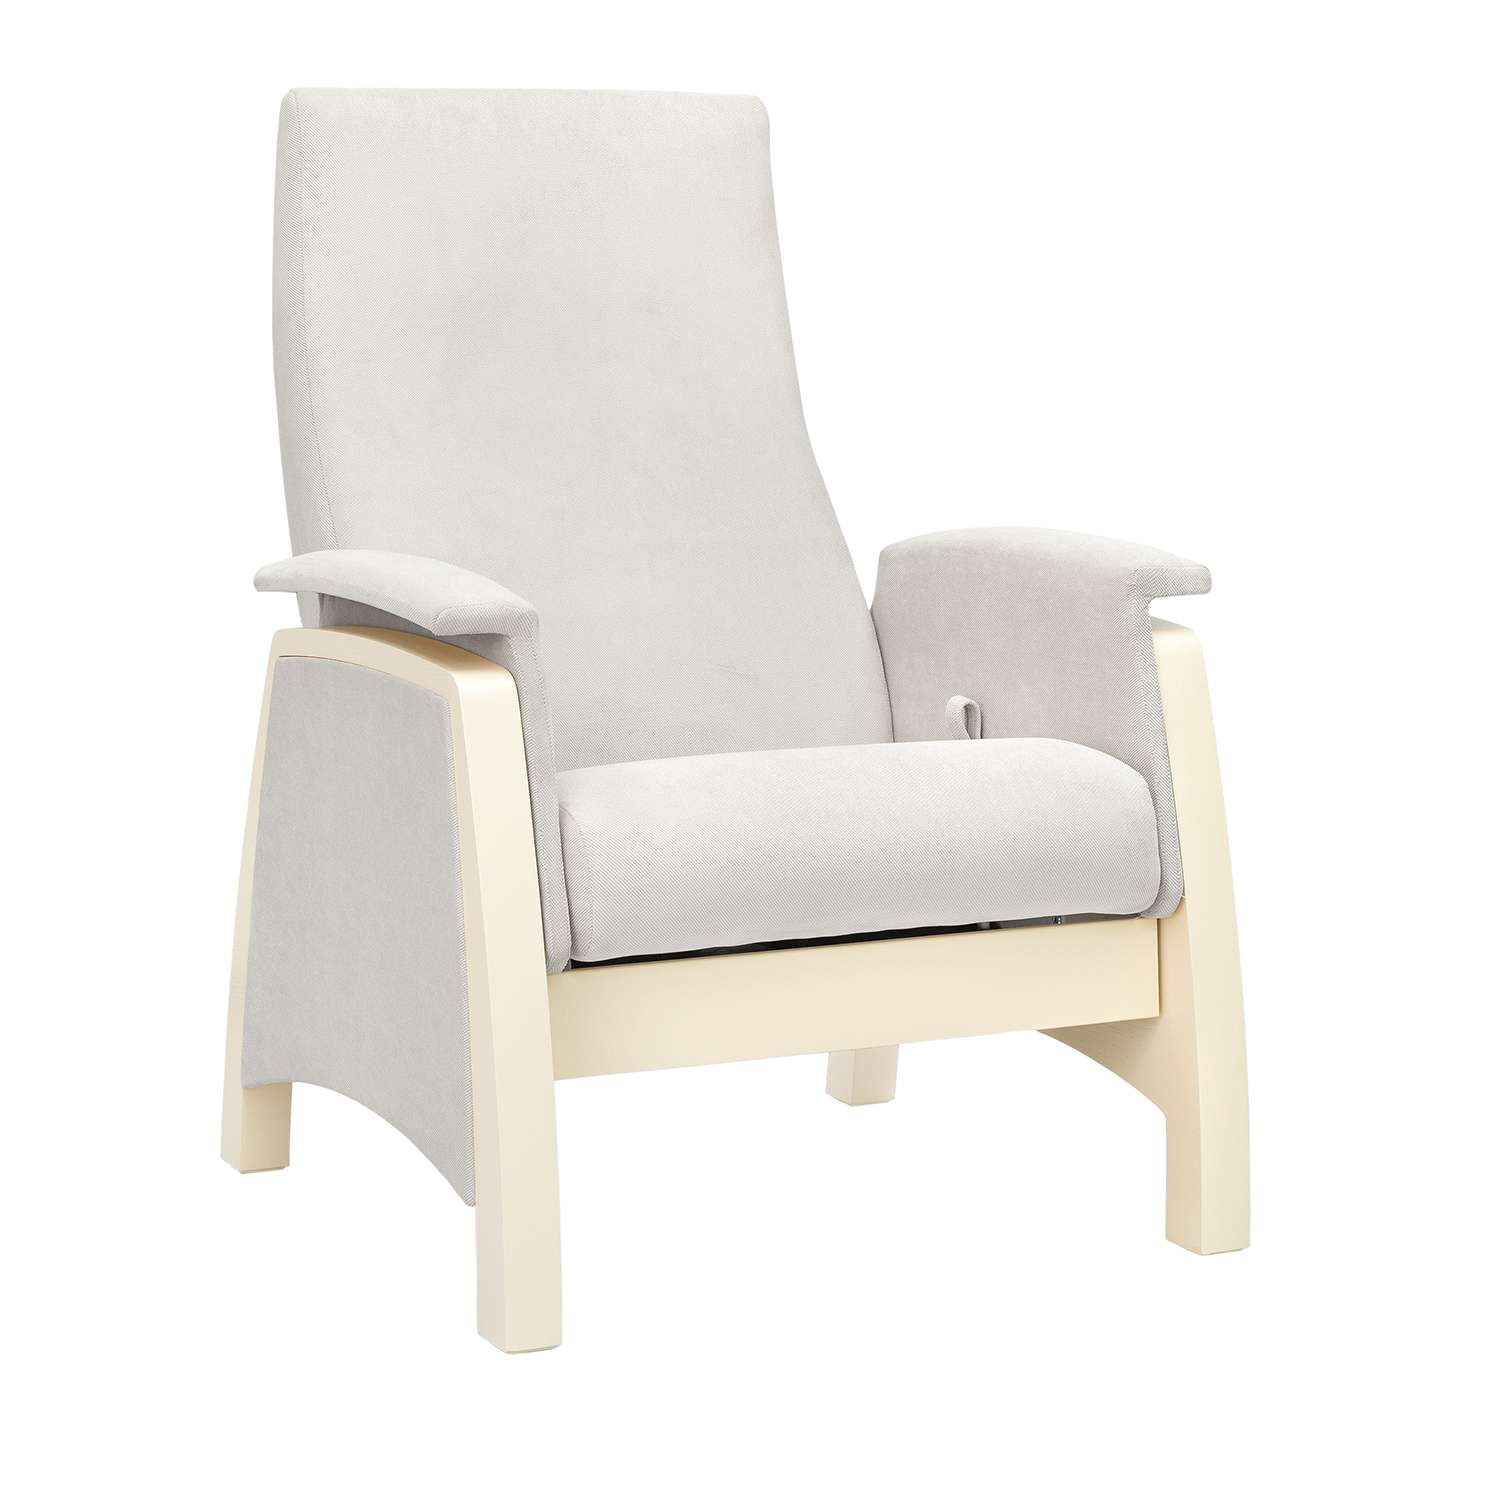 Кресло для кормления Milli Sky Дуб шампань / ткань Verona Light Grey - фото 2